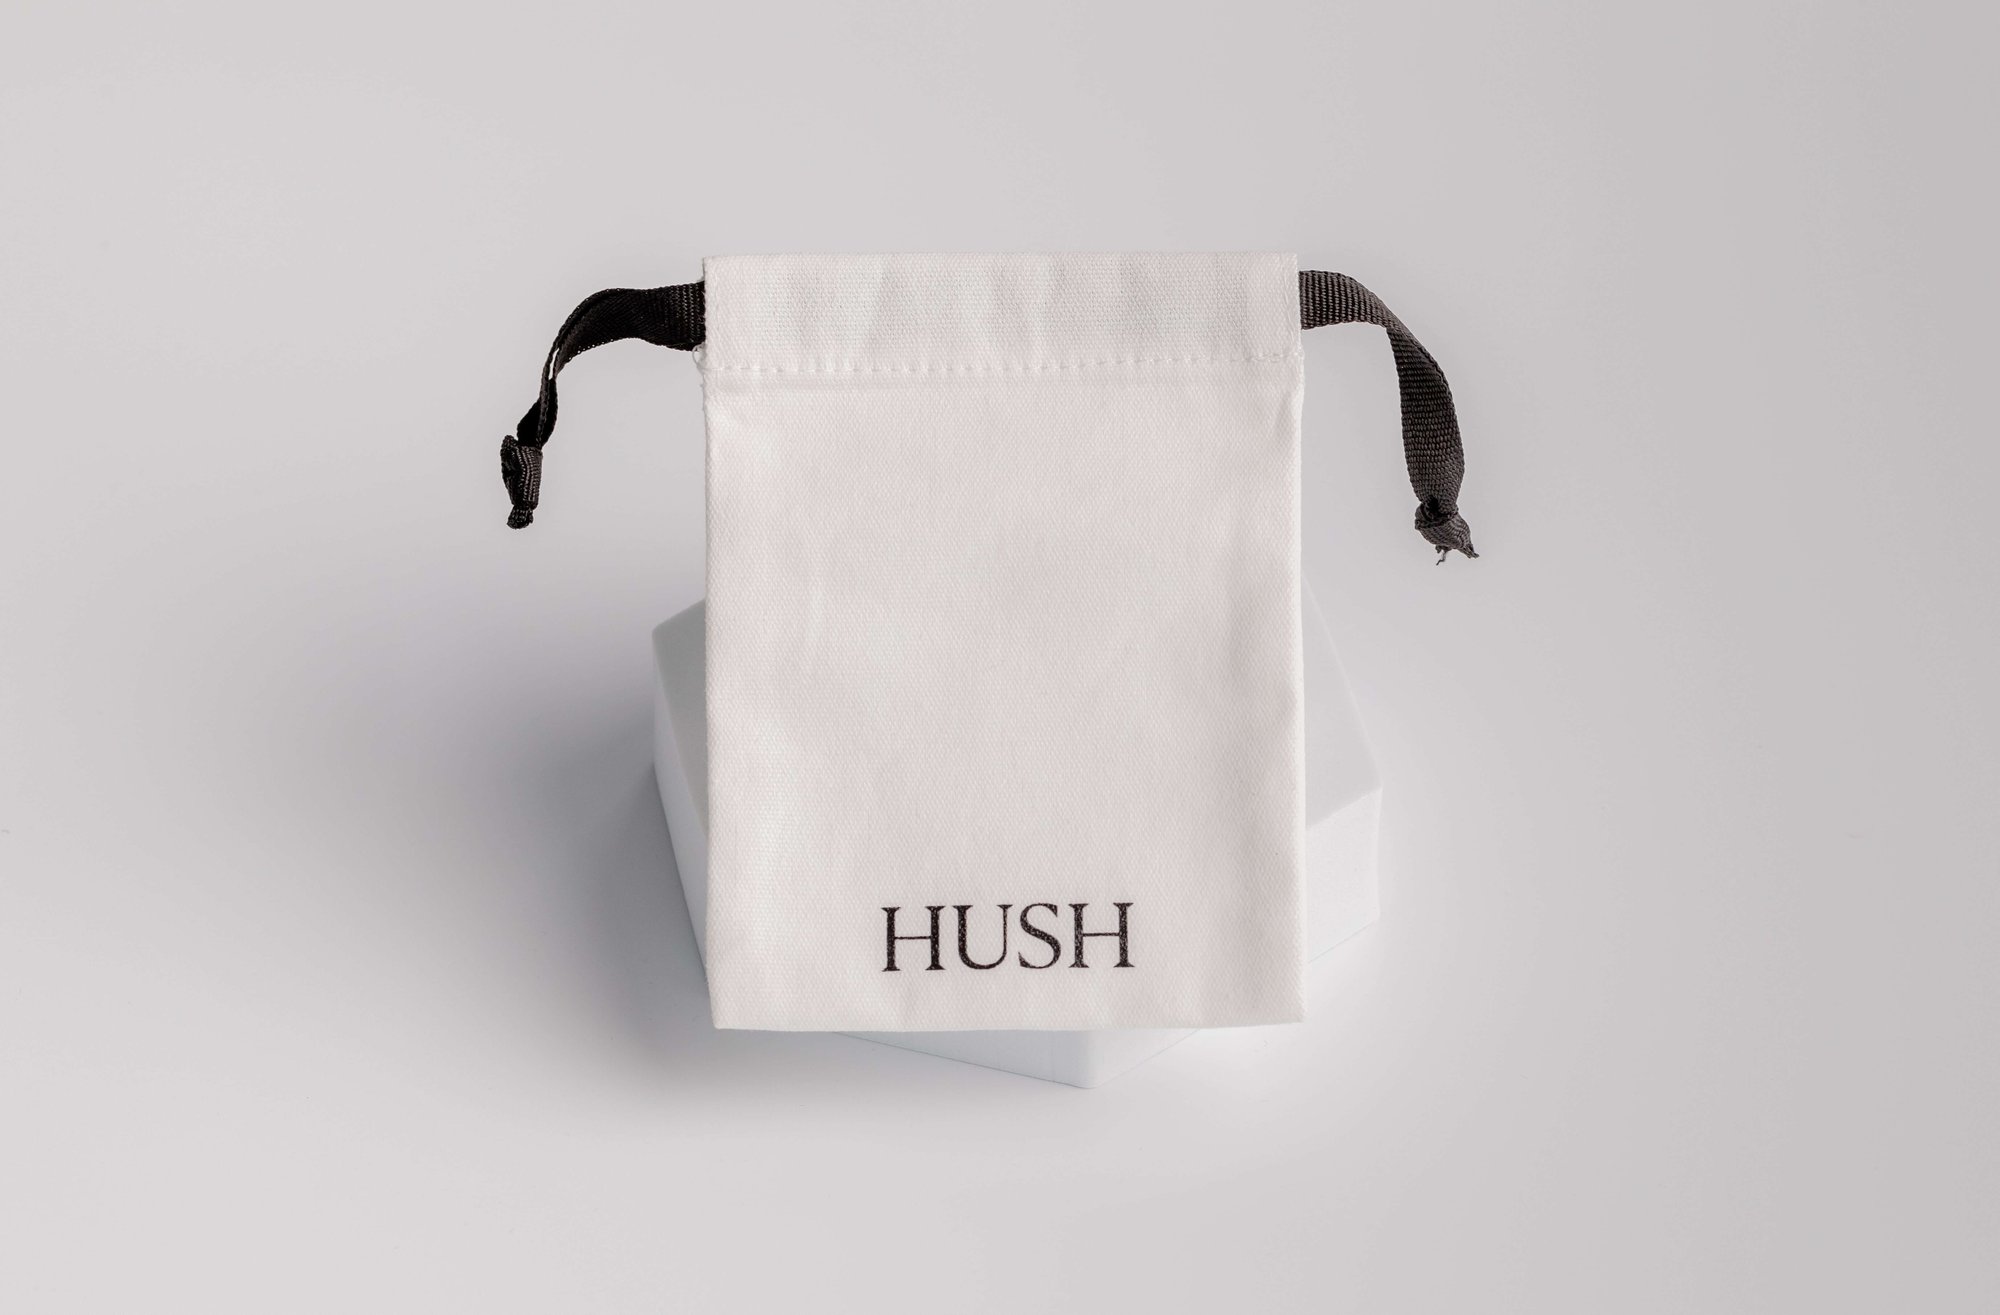 Hush drawstring bag